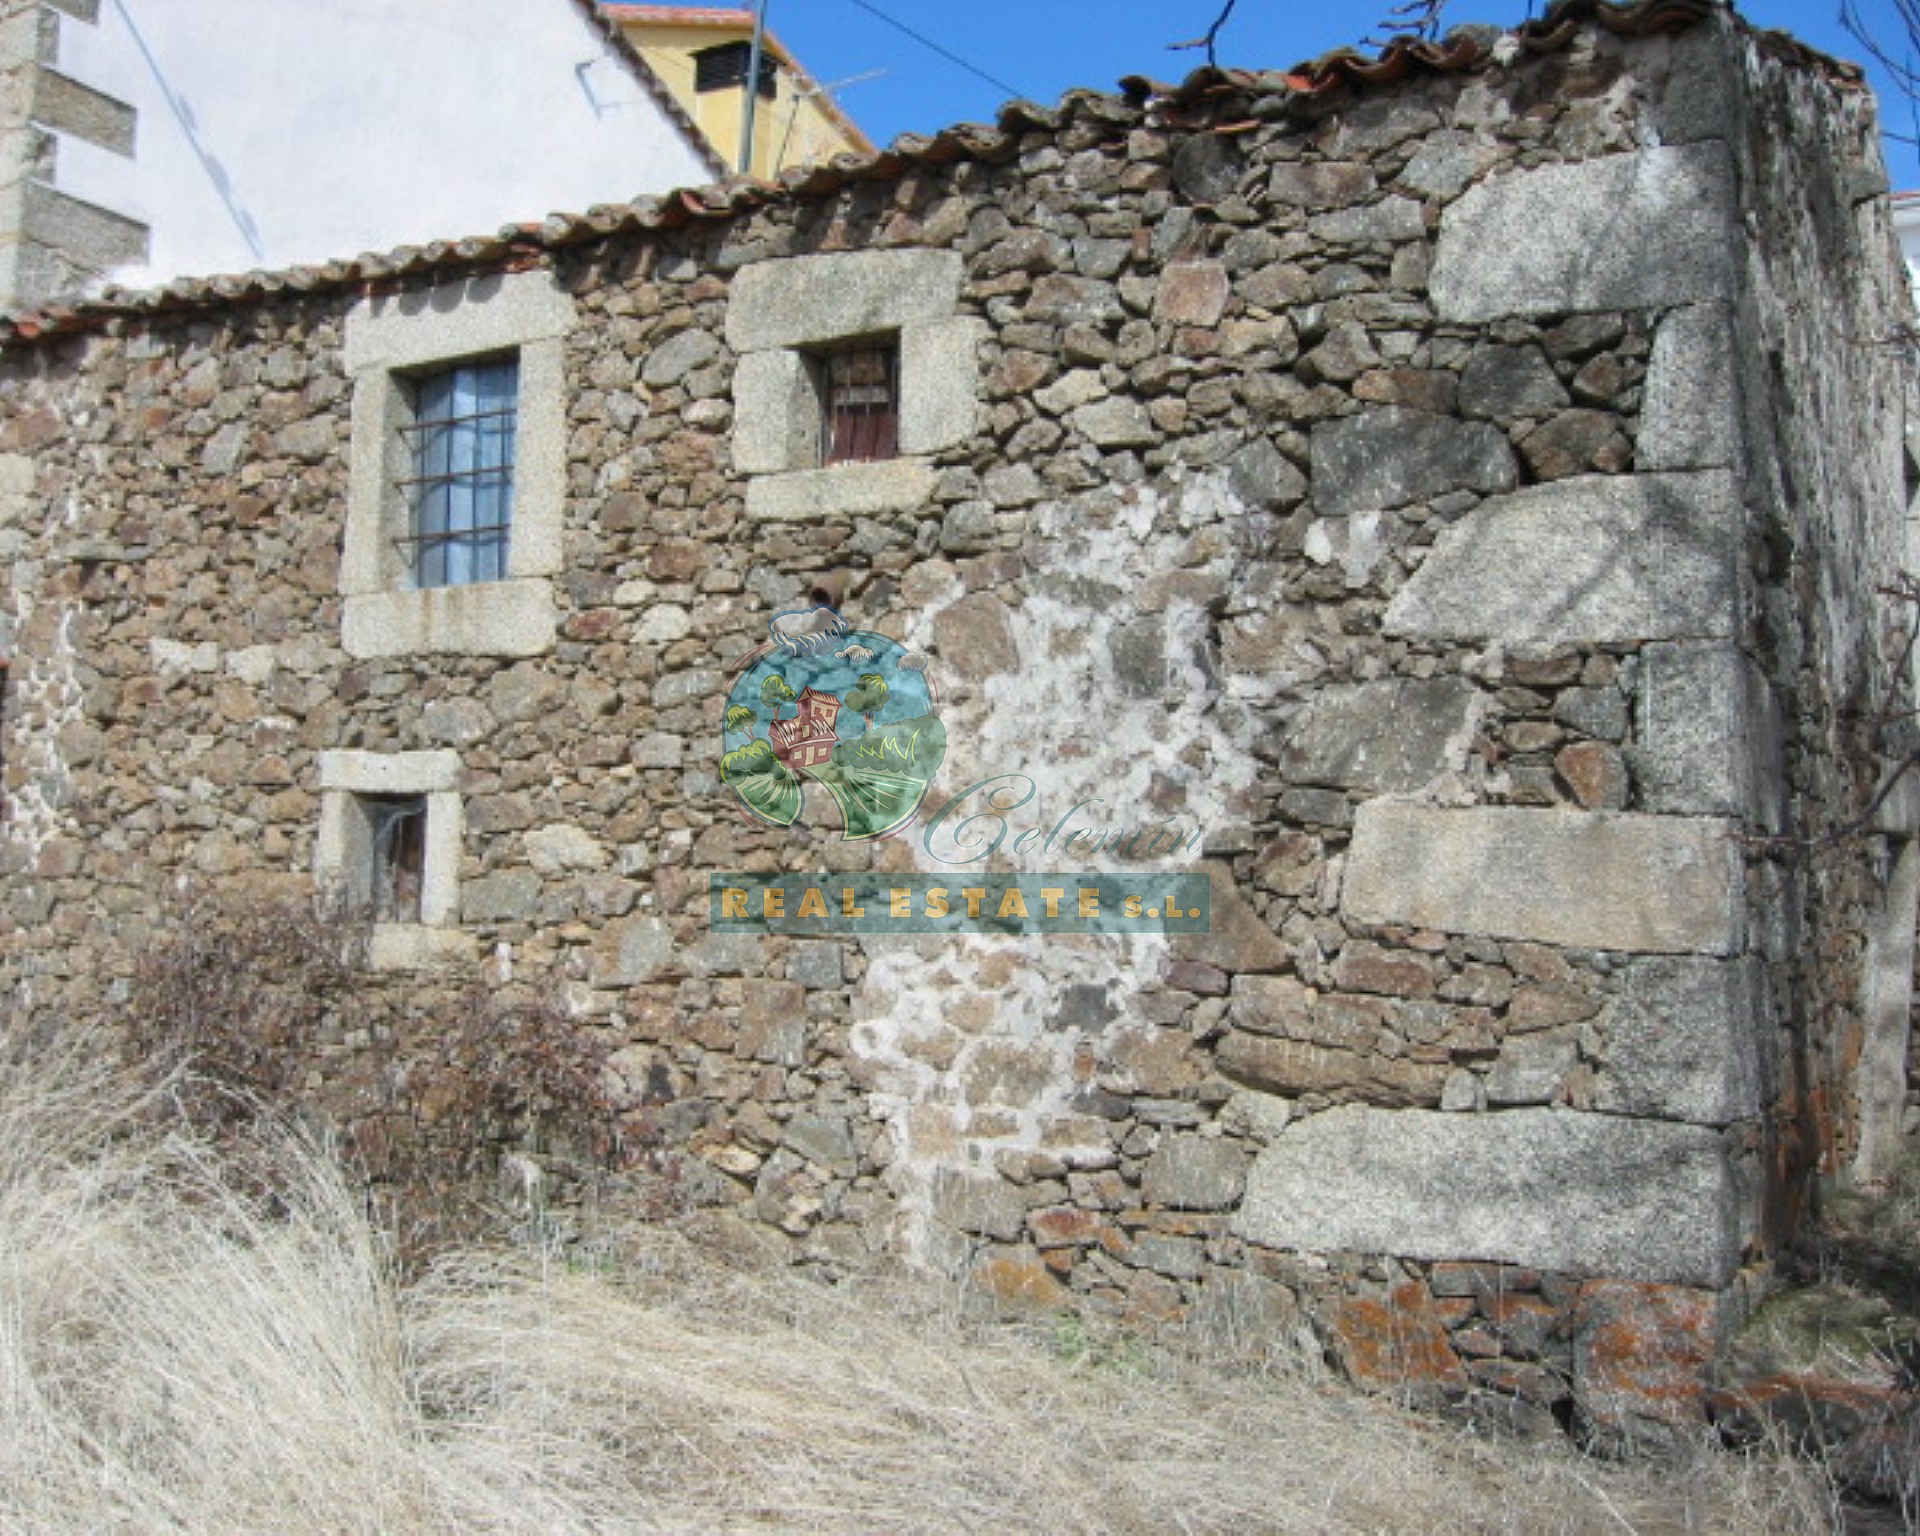 In Sierra de Gredos